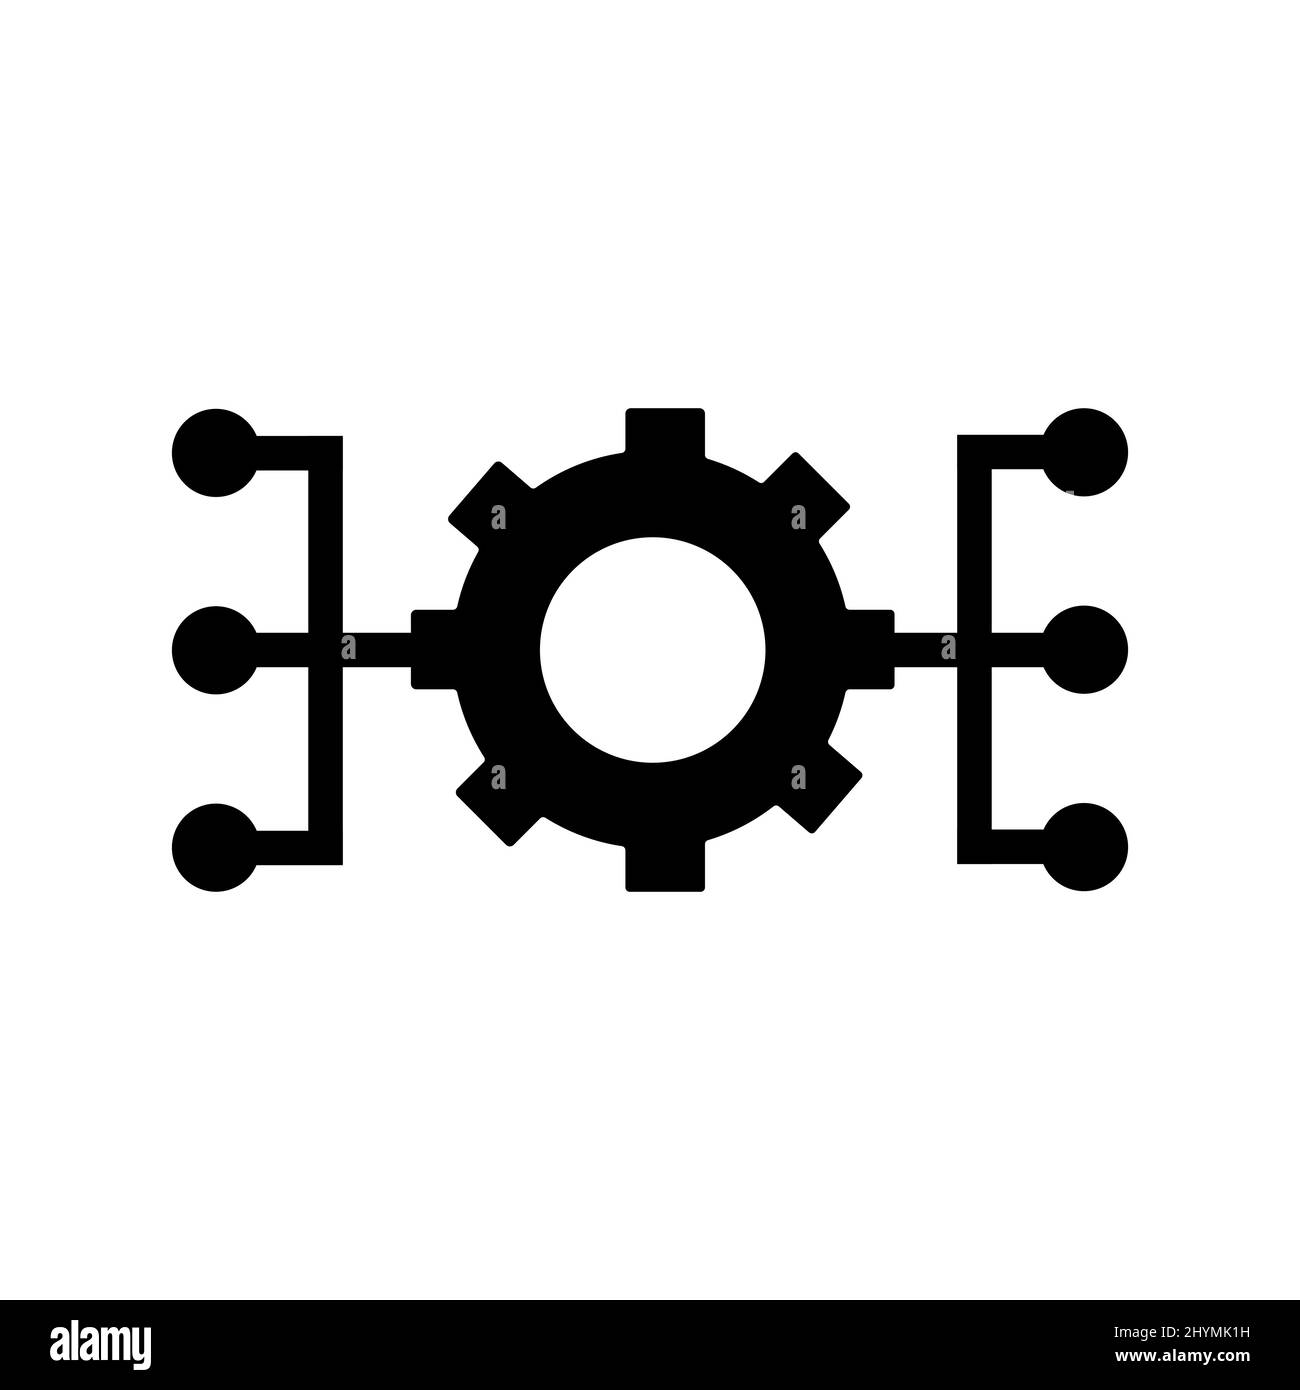 Icona astratta vettoriale sul bianco, illustrazione isolata per grafica e web design. Semplice simbolo piatto. Illustrazione Vettoriale